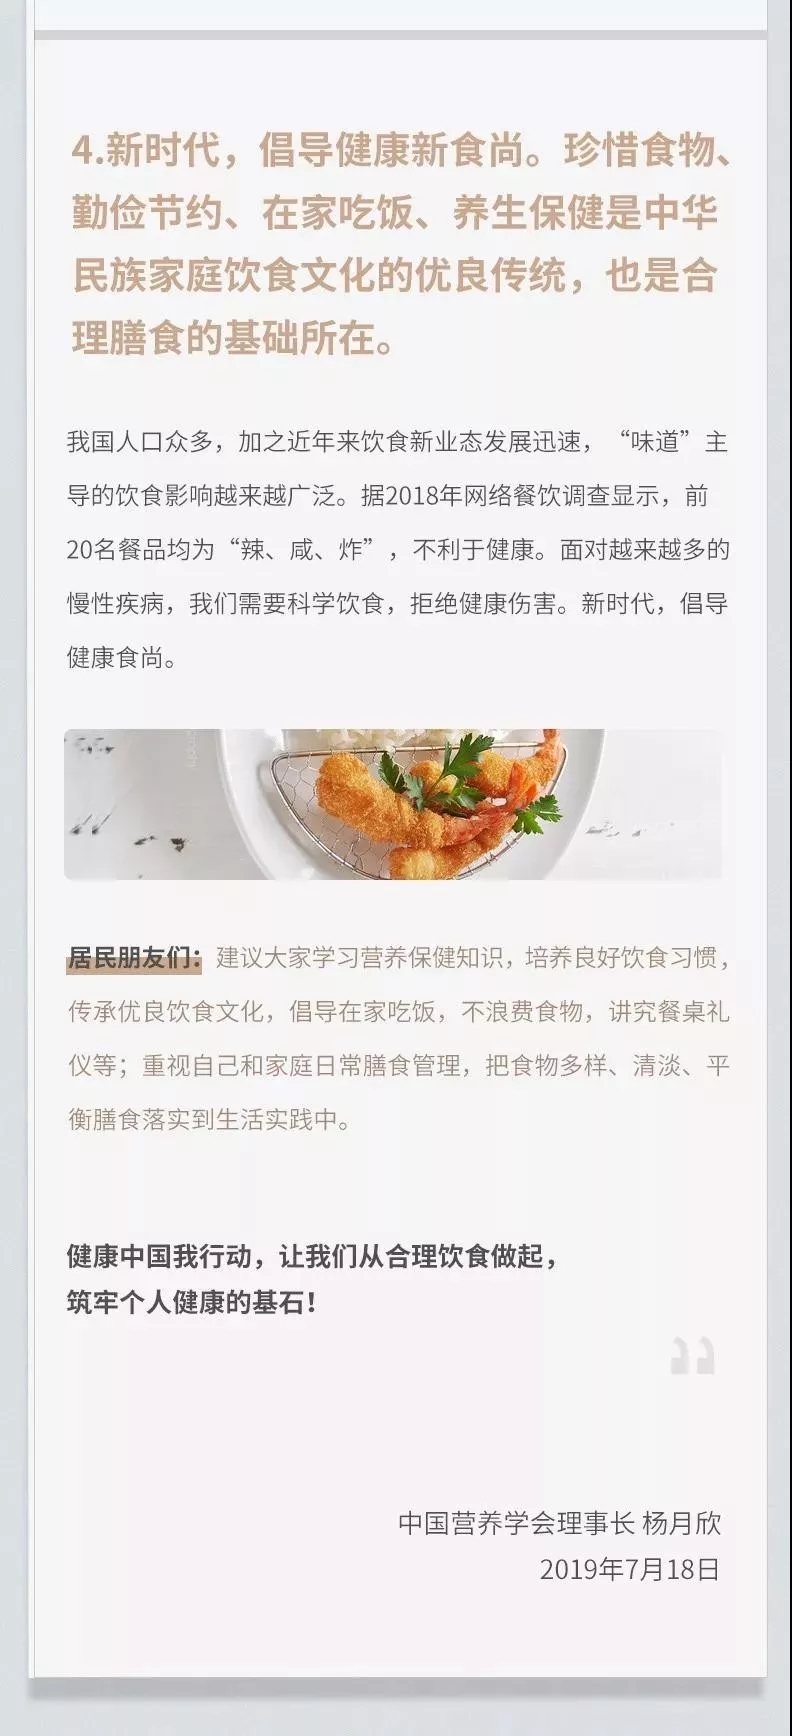 中国营养学会,健康饮食习惯